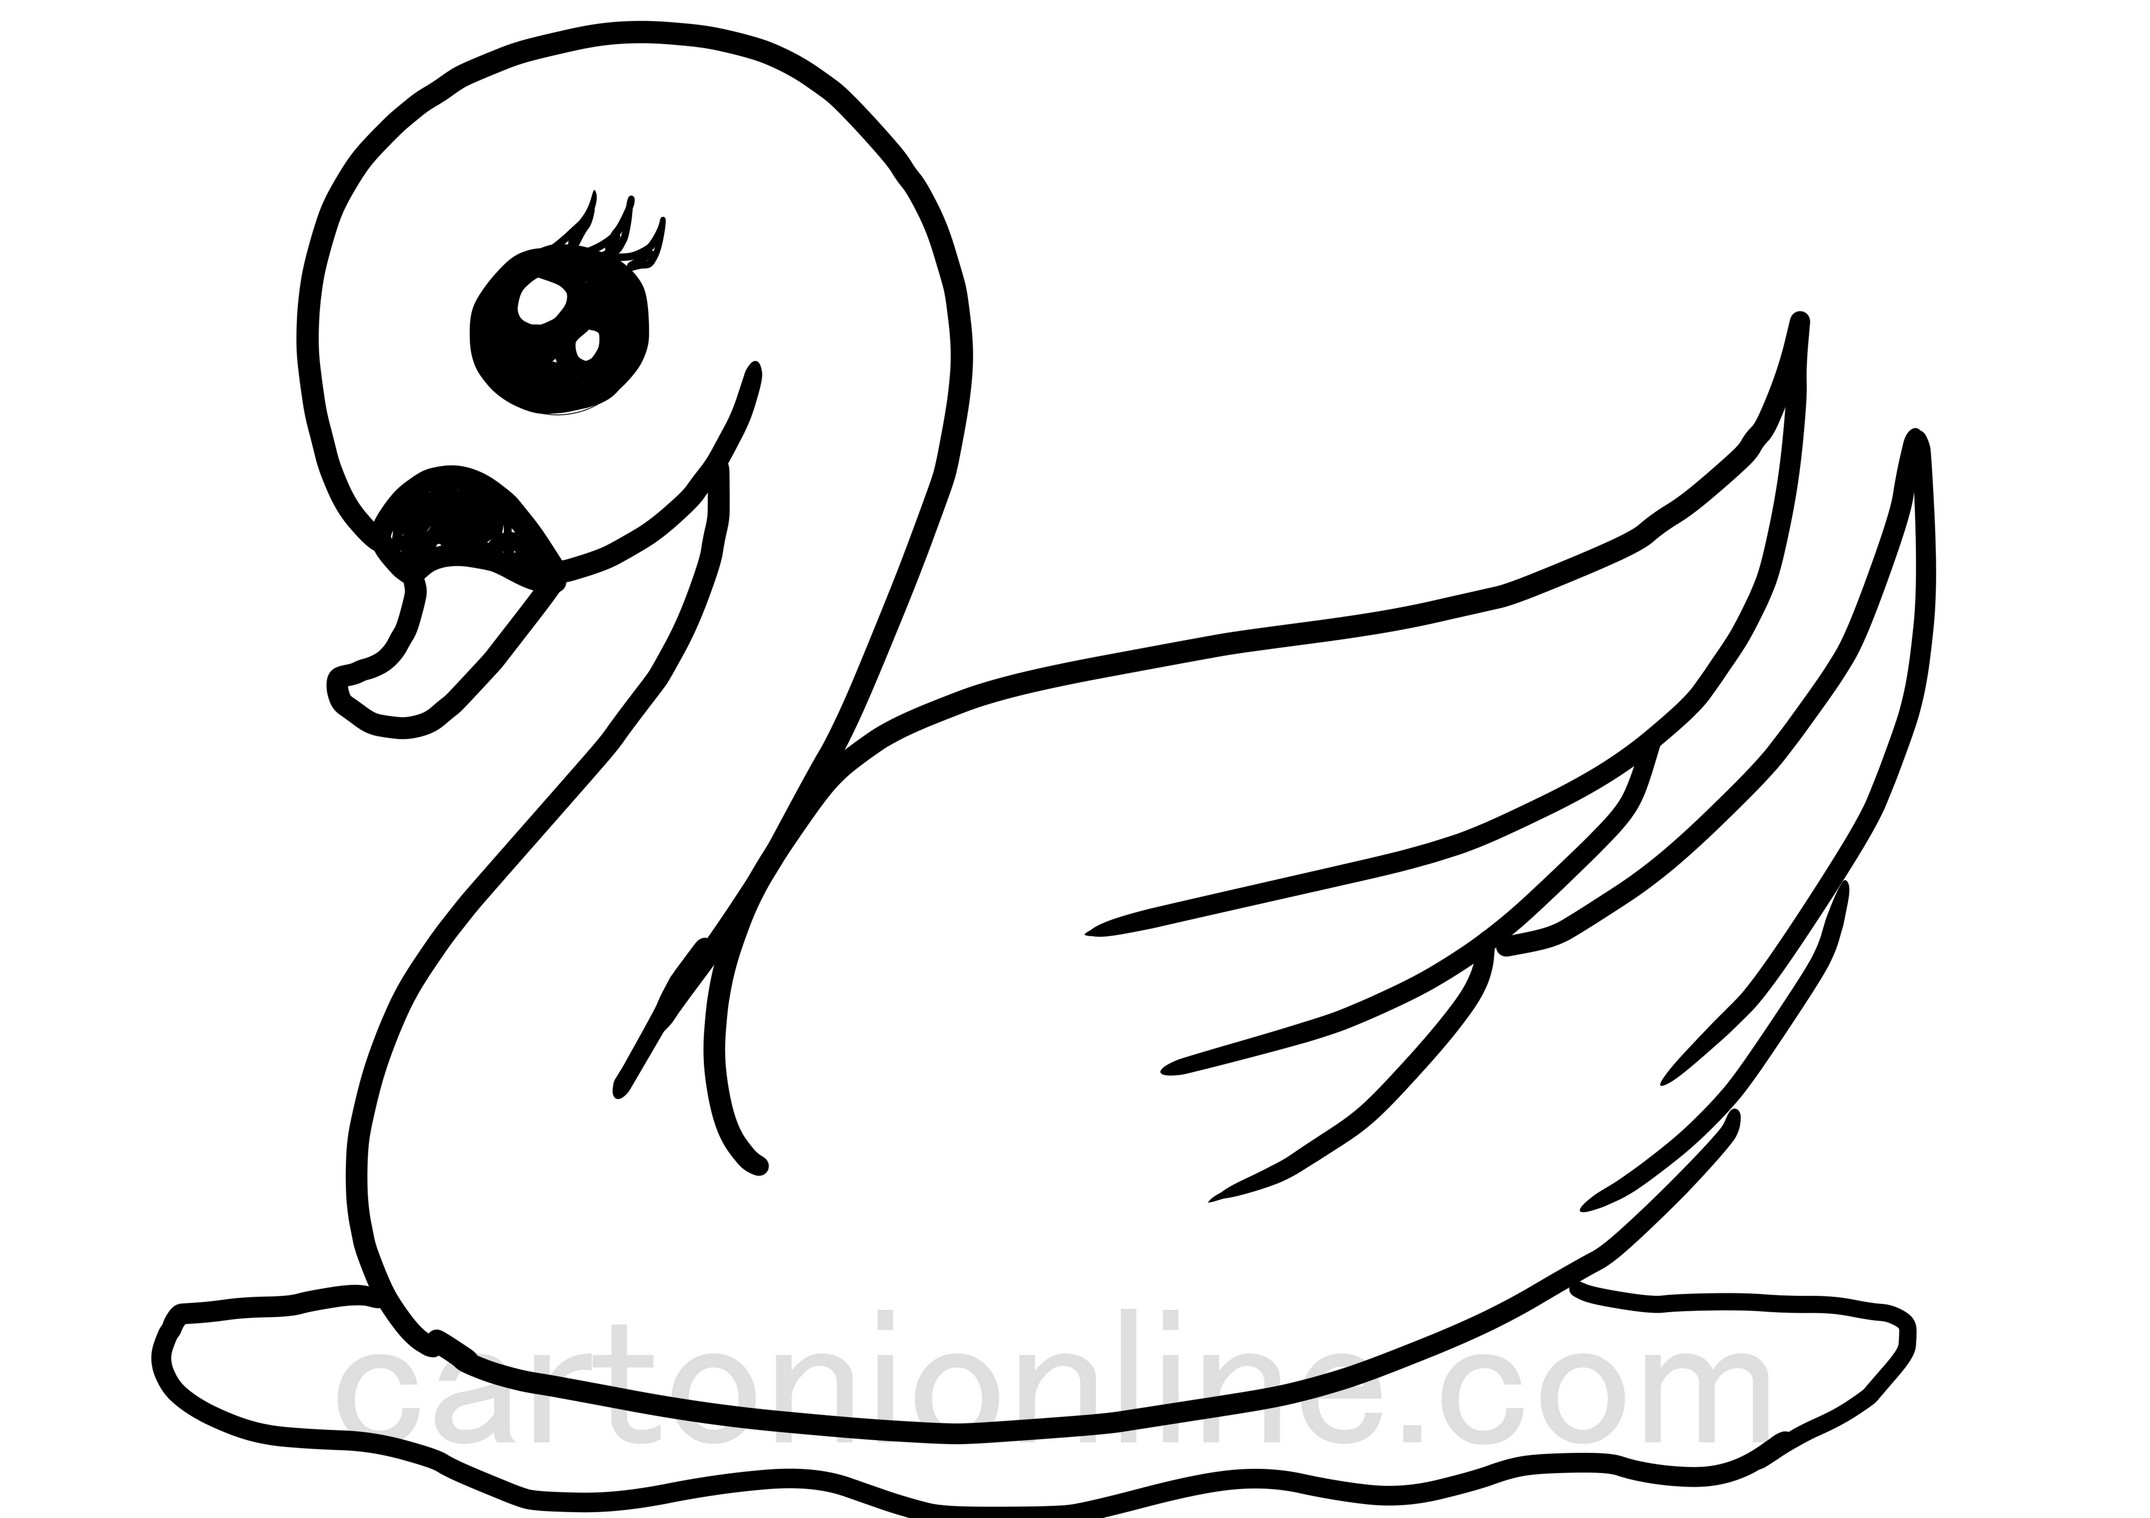 Dibujo de cisne kawaii para colorear para niños